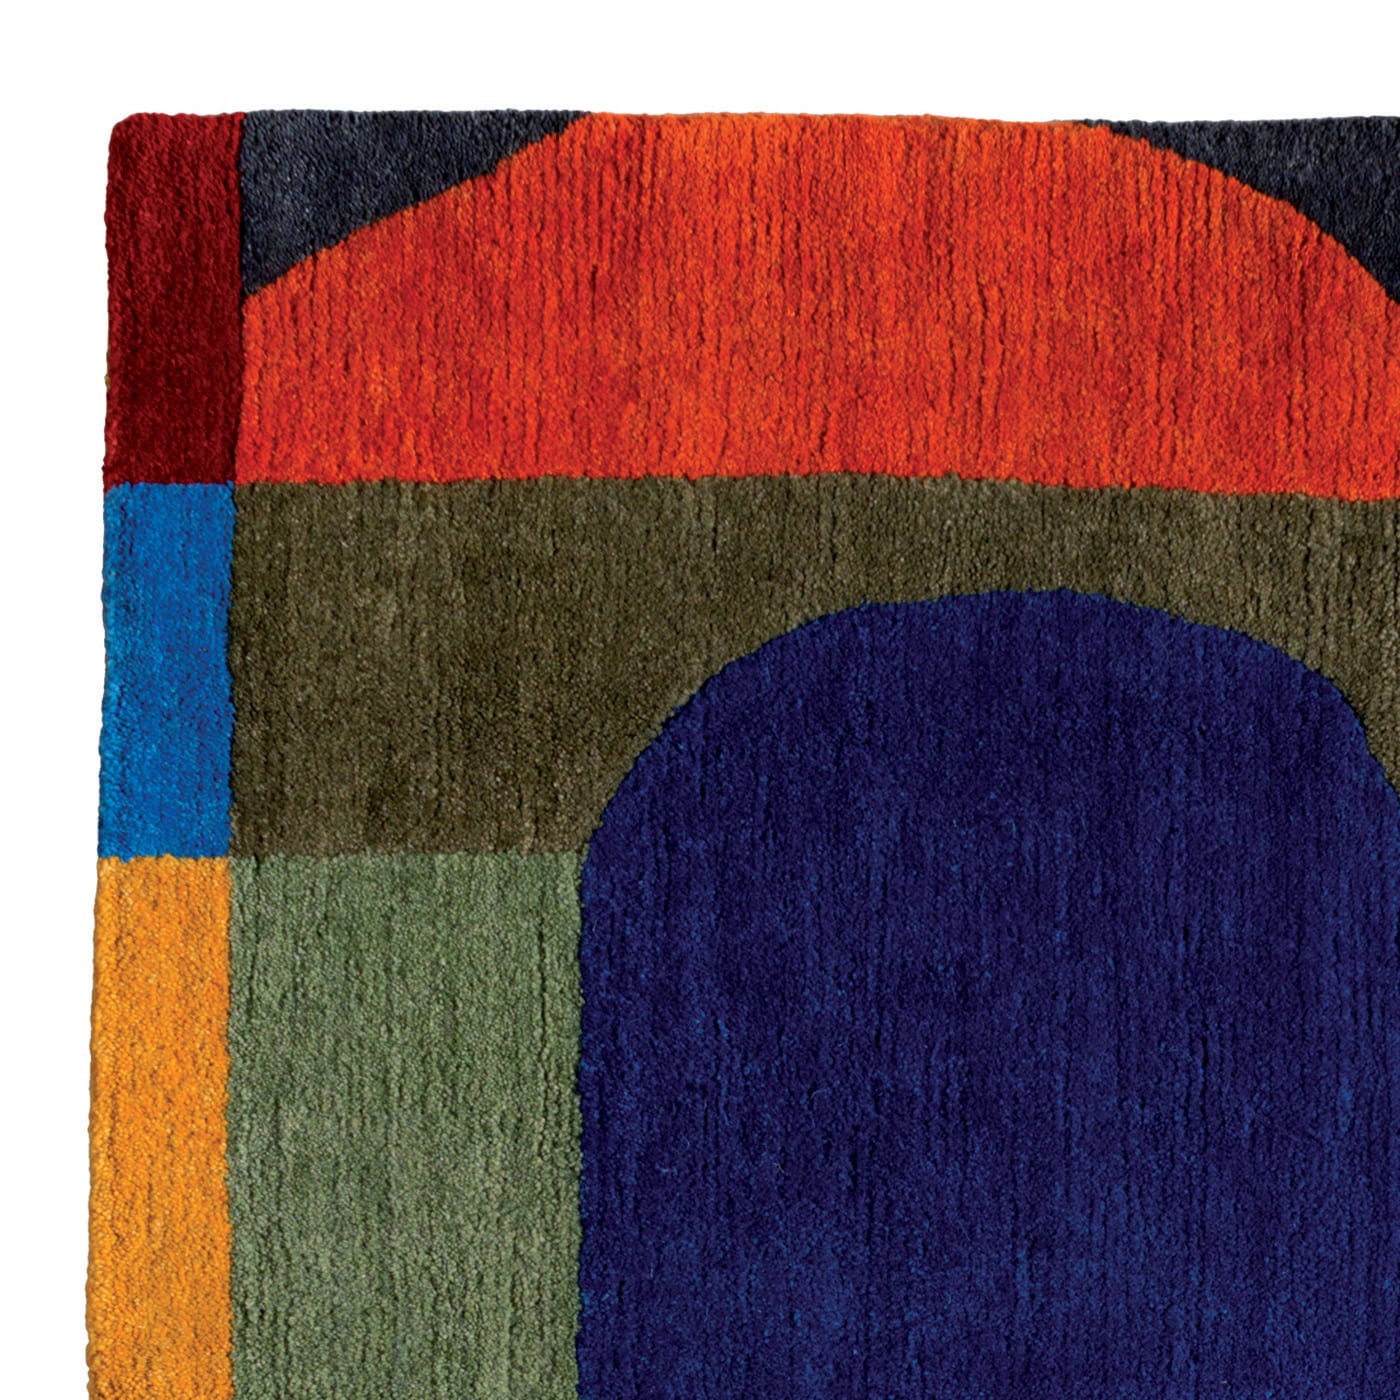 CEM7 Carpet by Chung Eun Mo - Post Design - Memphis